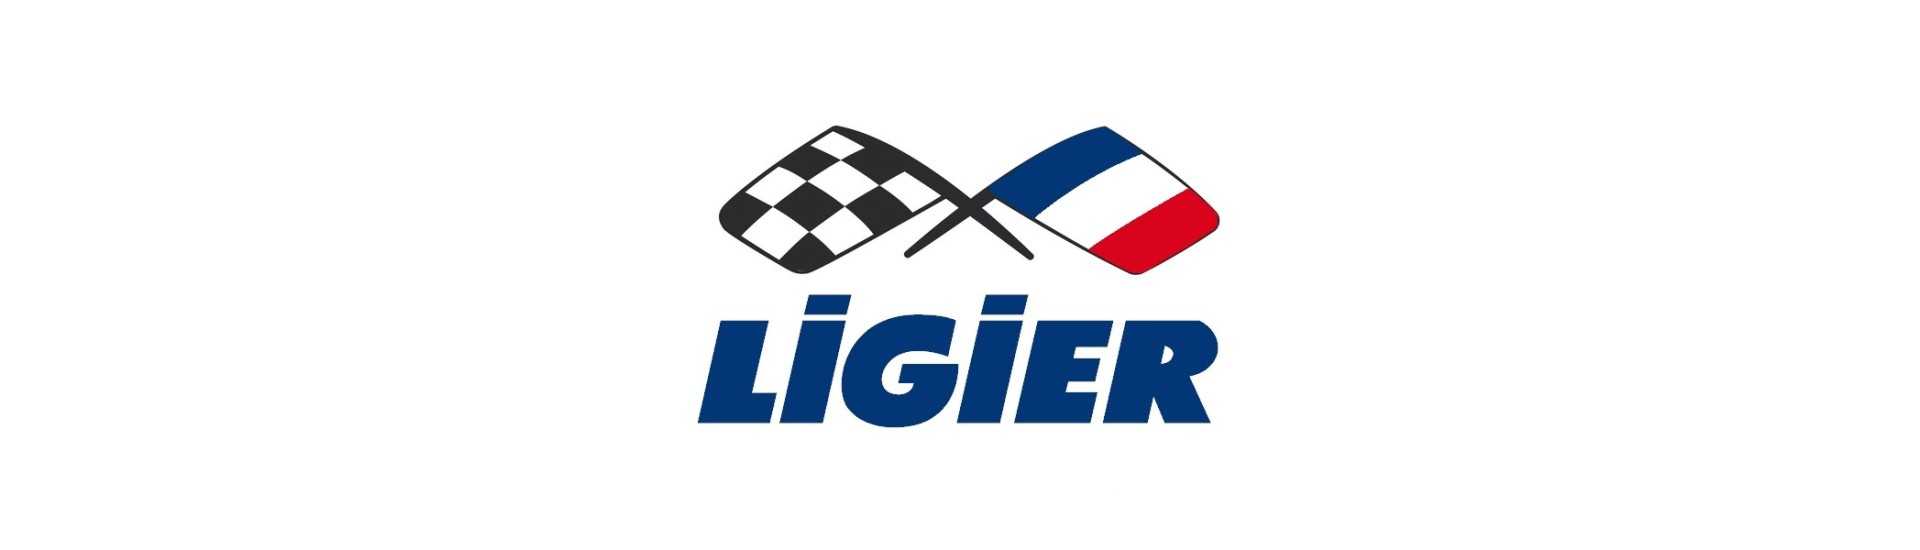 Potentiometru la cel mai bun preț pentru o mașină fără permis Ligier